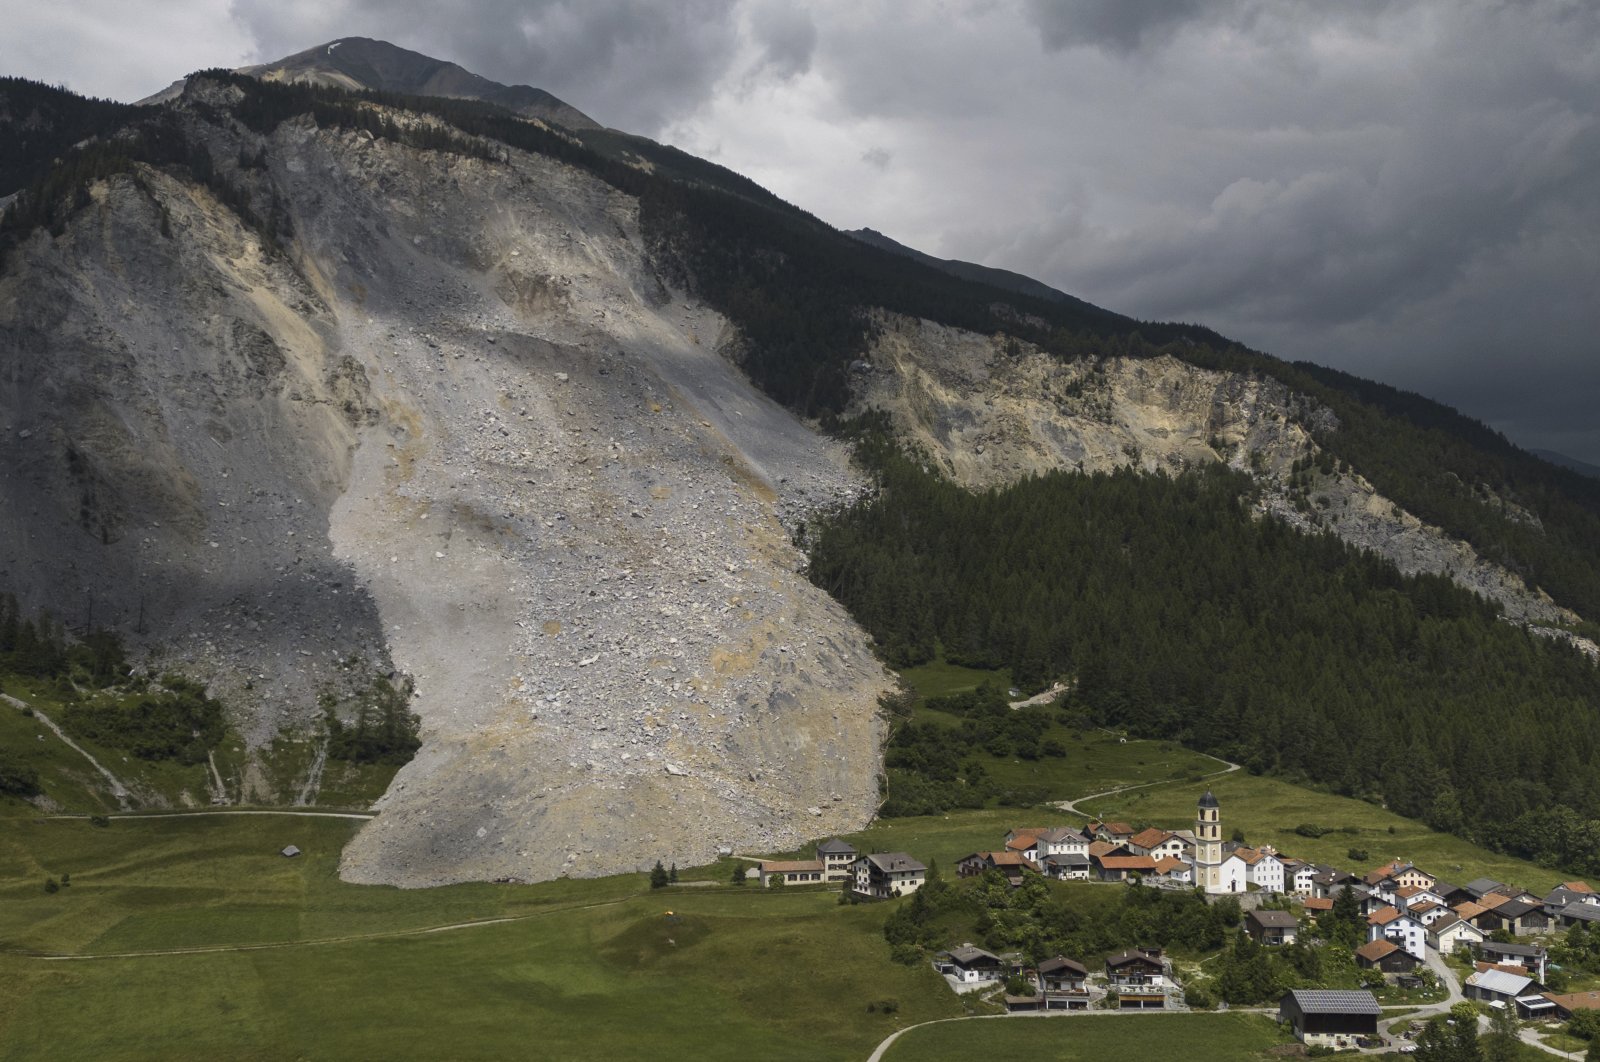 Longsor batu besar nyaris lolos dari desa Swiss yang dievakuasi